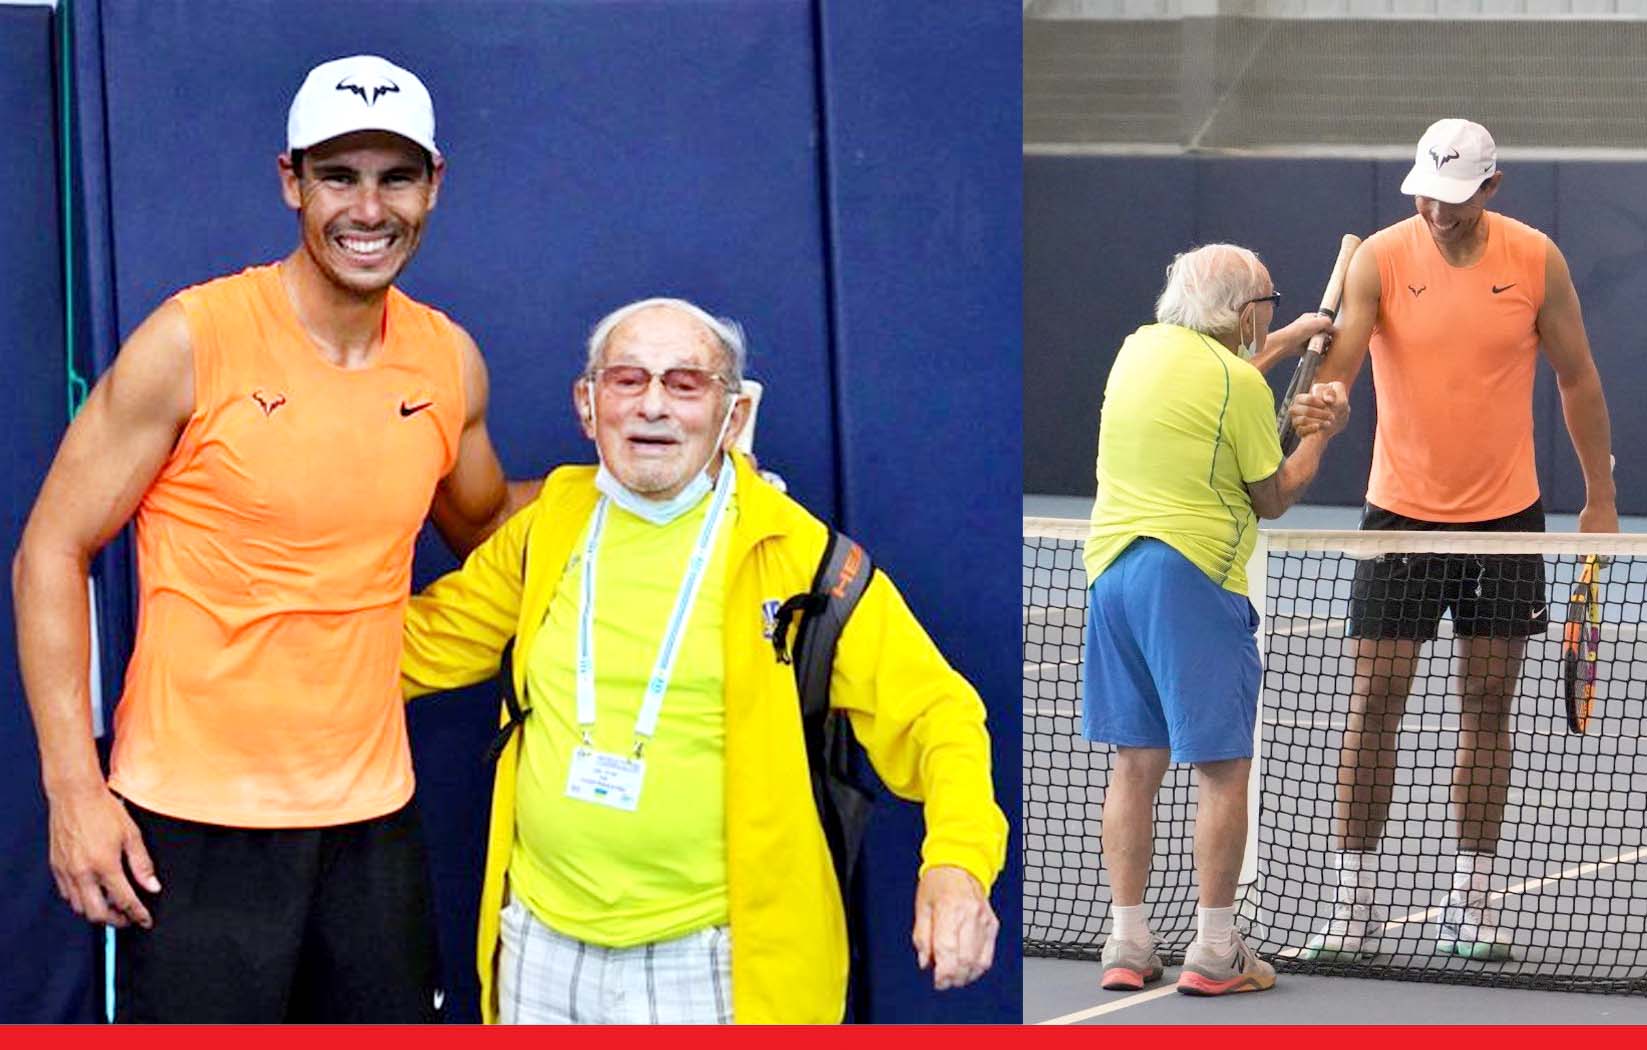 राफेल नडाल ने 97 साल के शख्स का सपना किया पूरा, साथ खेला टेनिस मैच